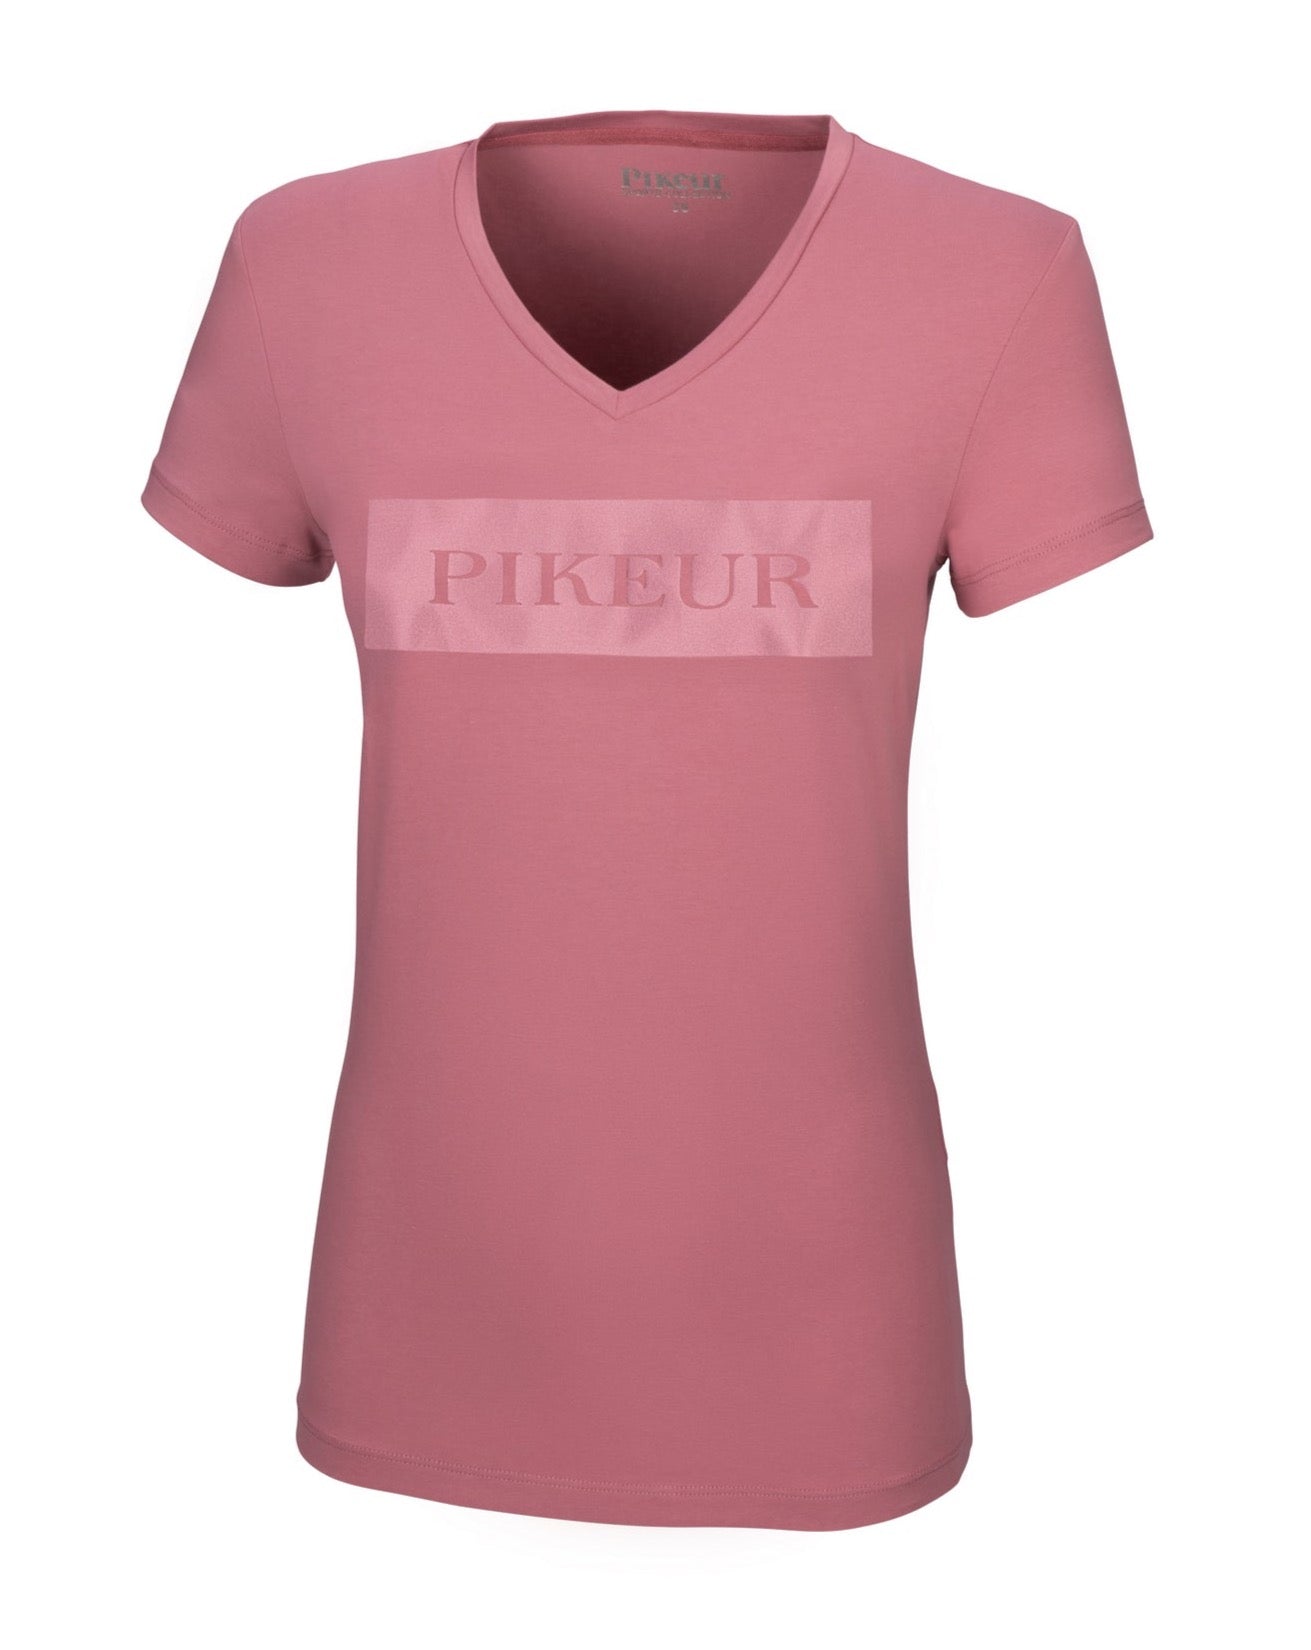 Pikeur Franja ladies t-shirt in Noble Rose